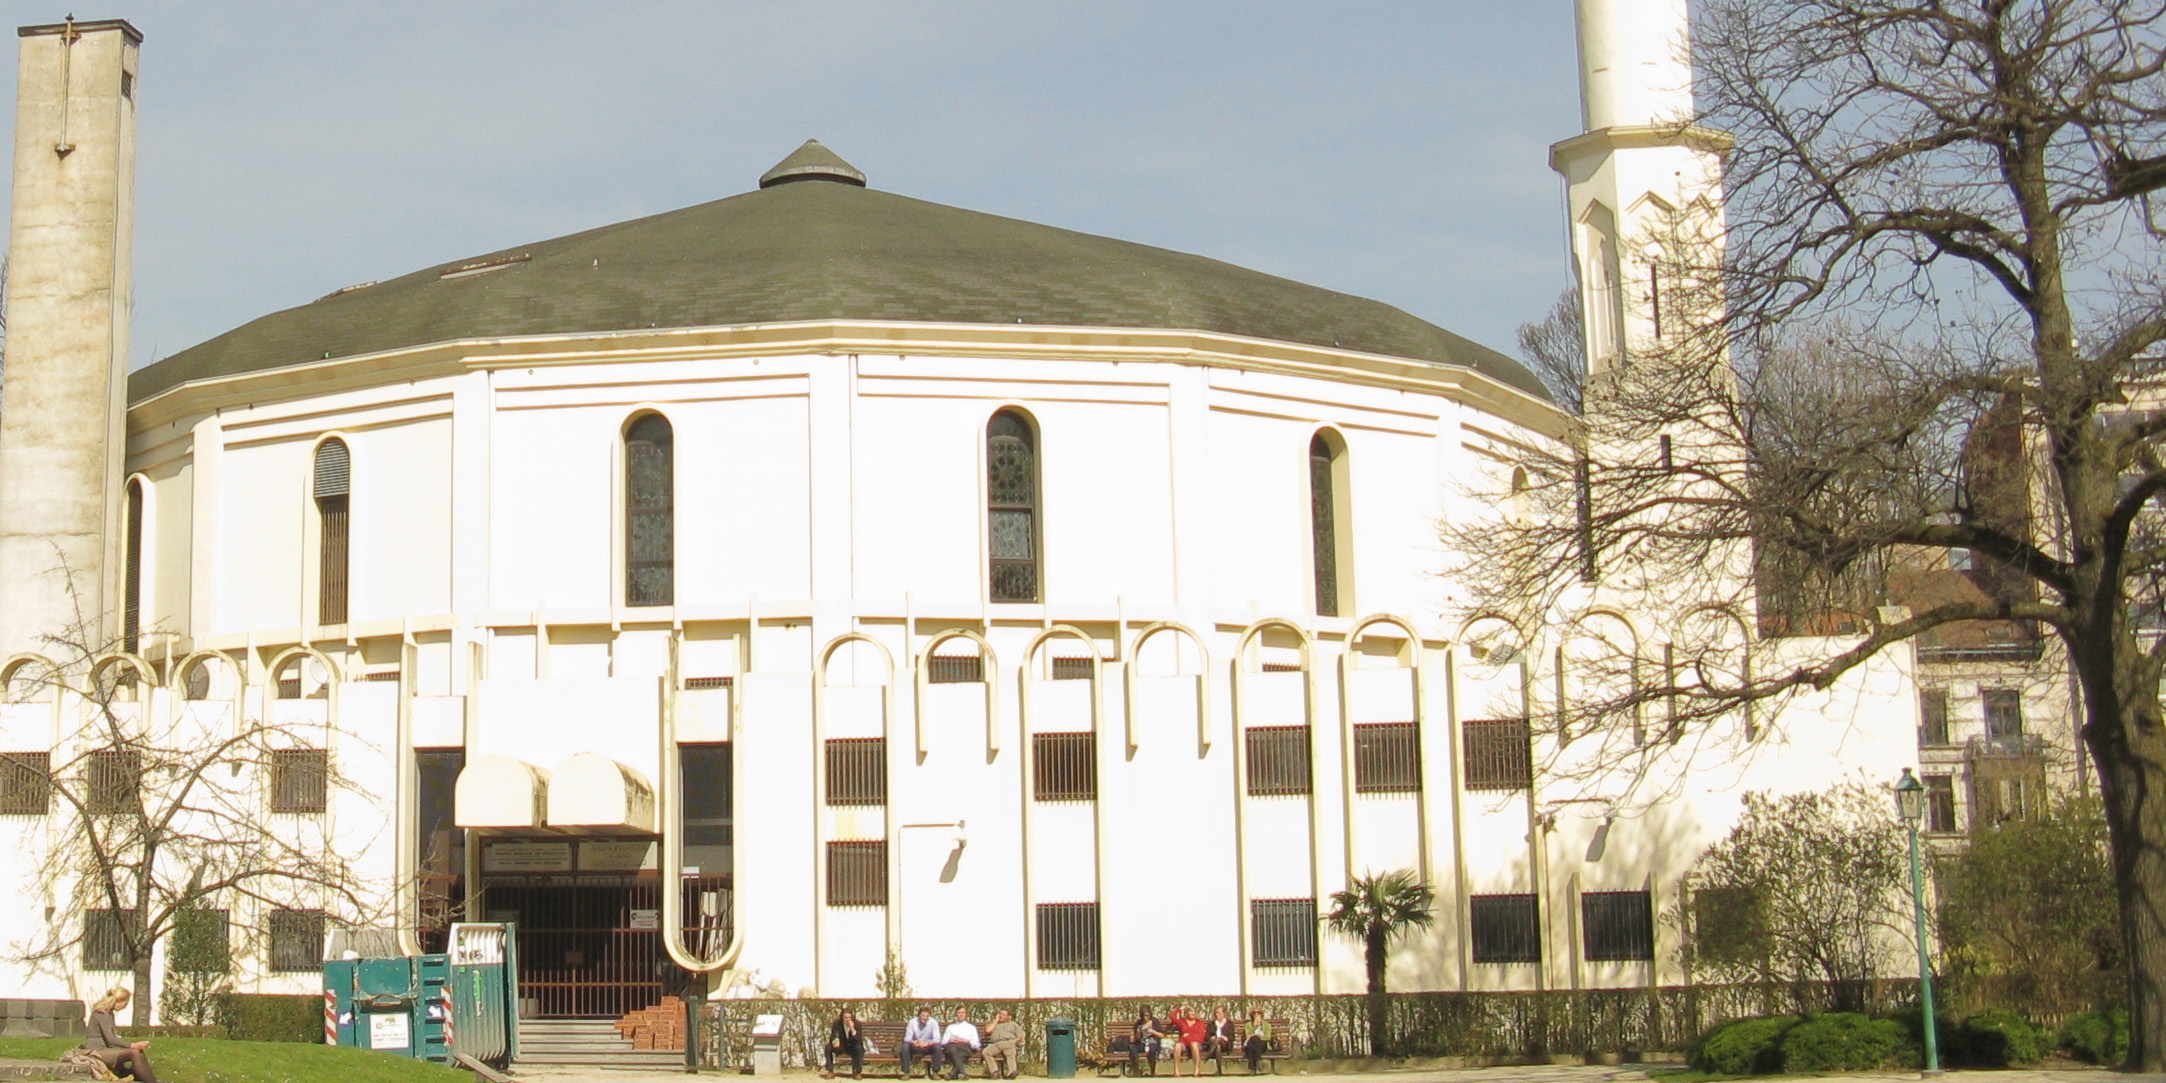 Belgique : vers une interdiction des financements étrangers pour les mosquées ?